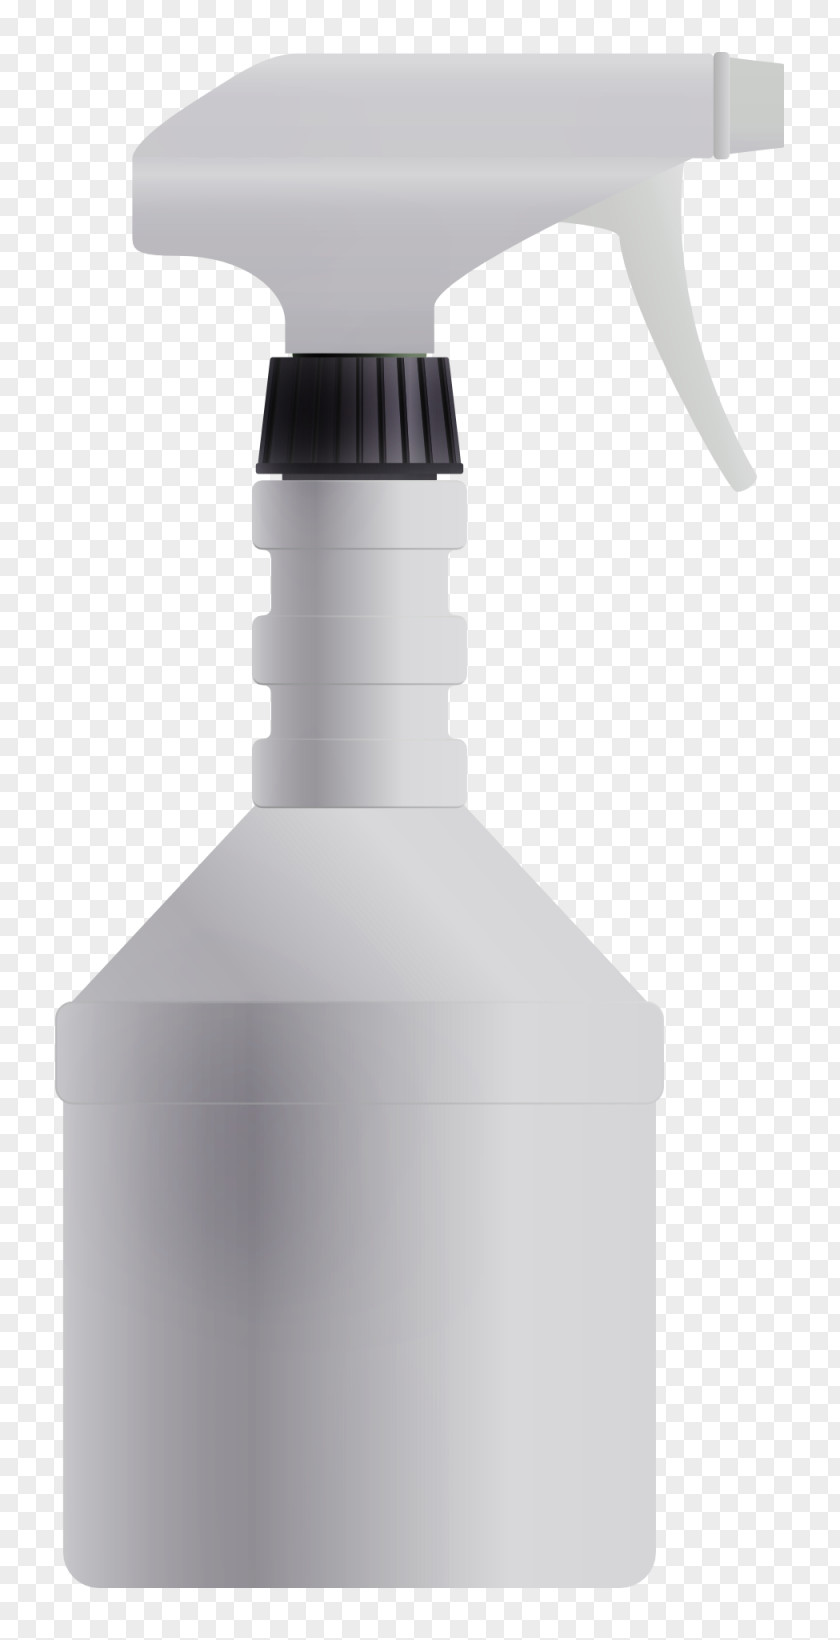 Water Sprayer Vector Cooler Plastic Bottle Download PNG